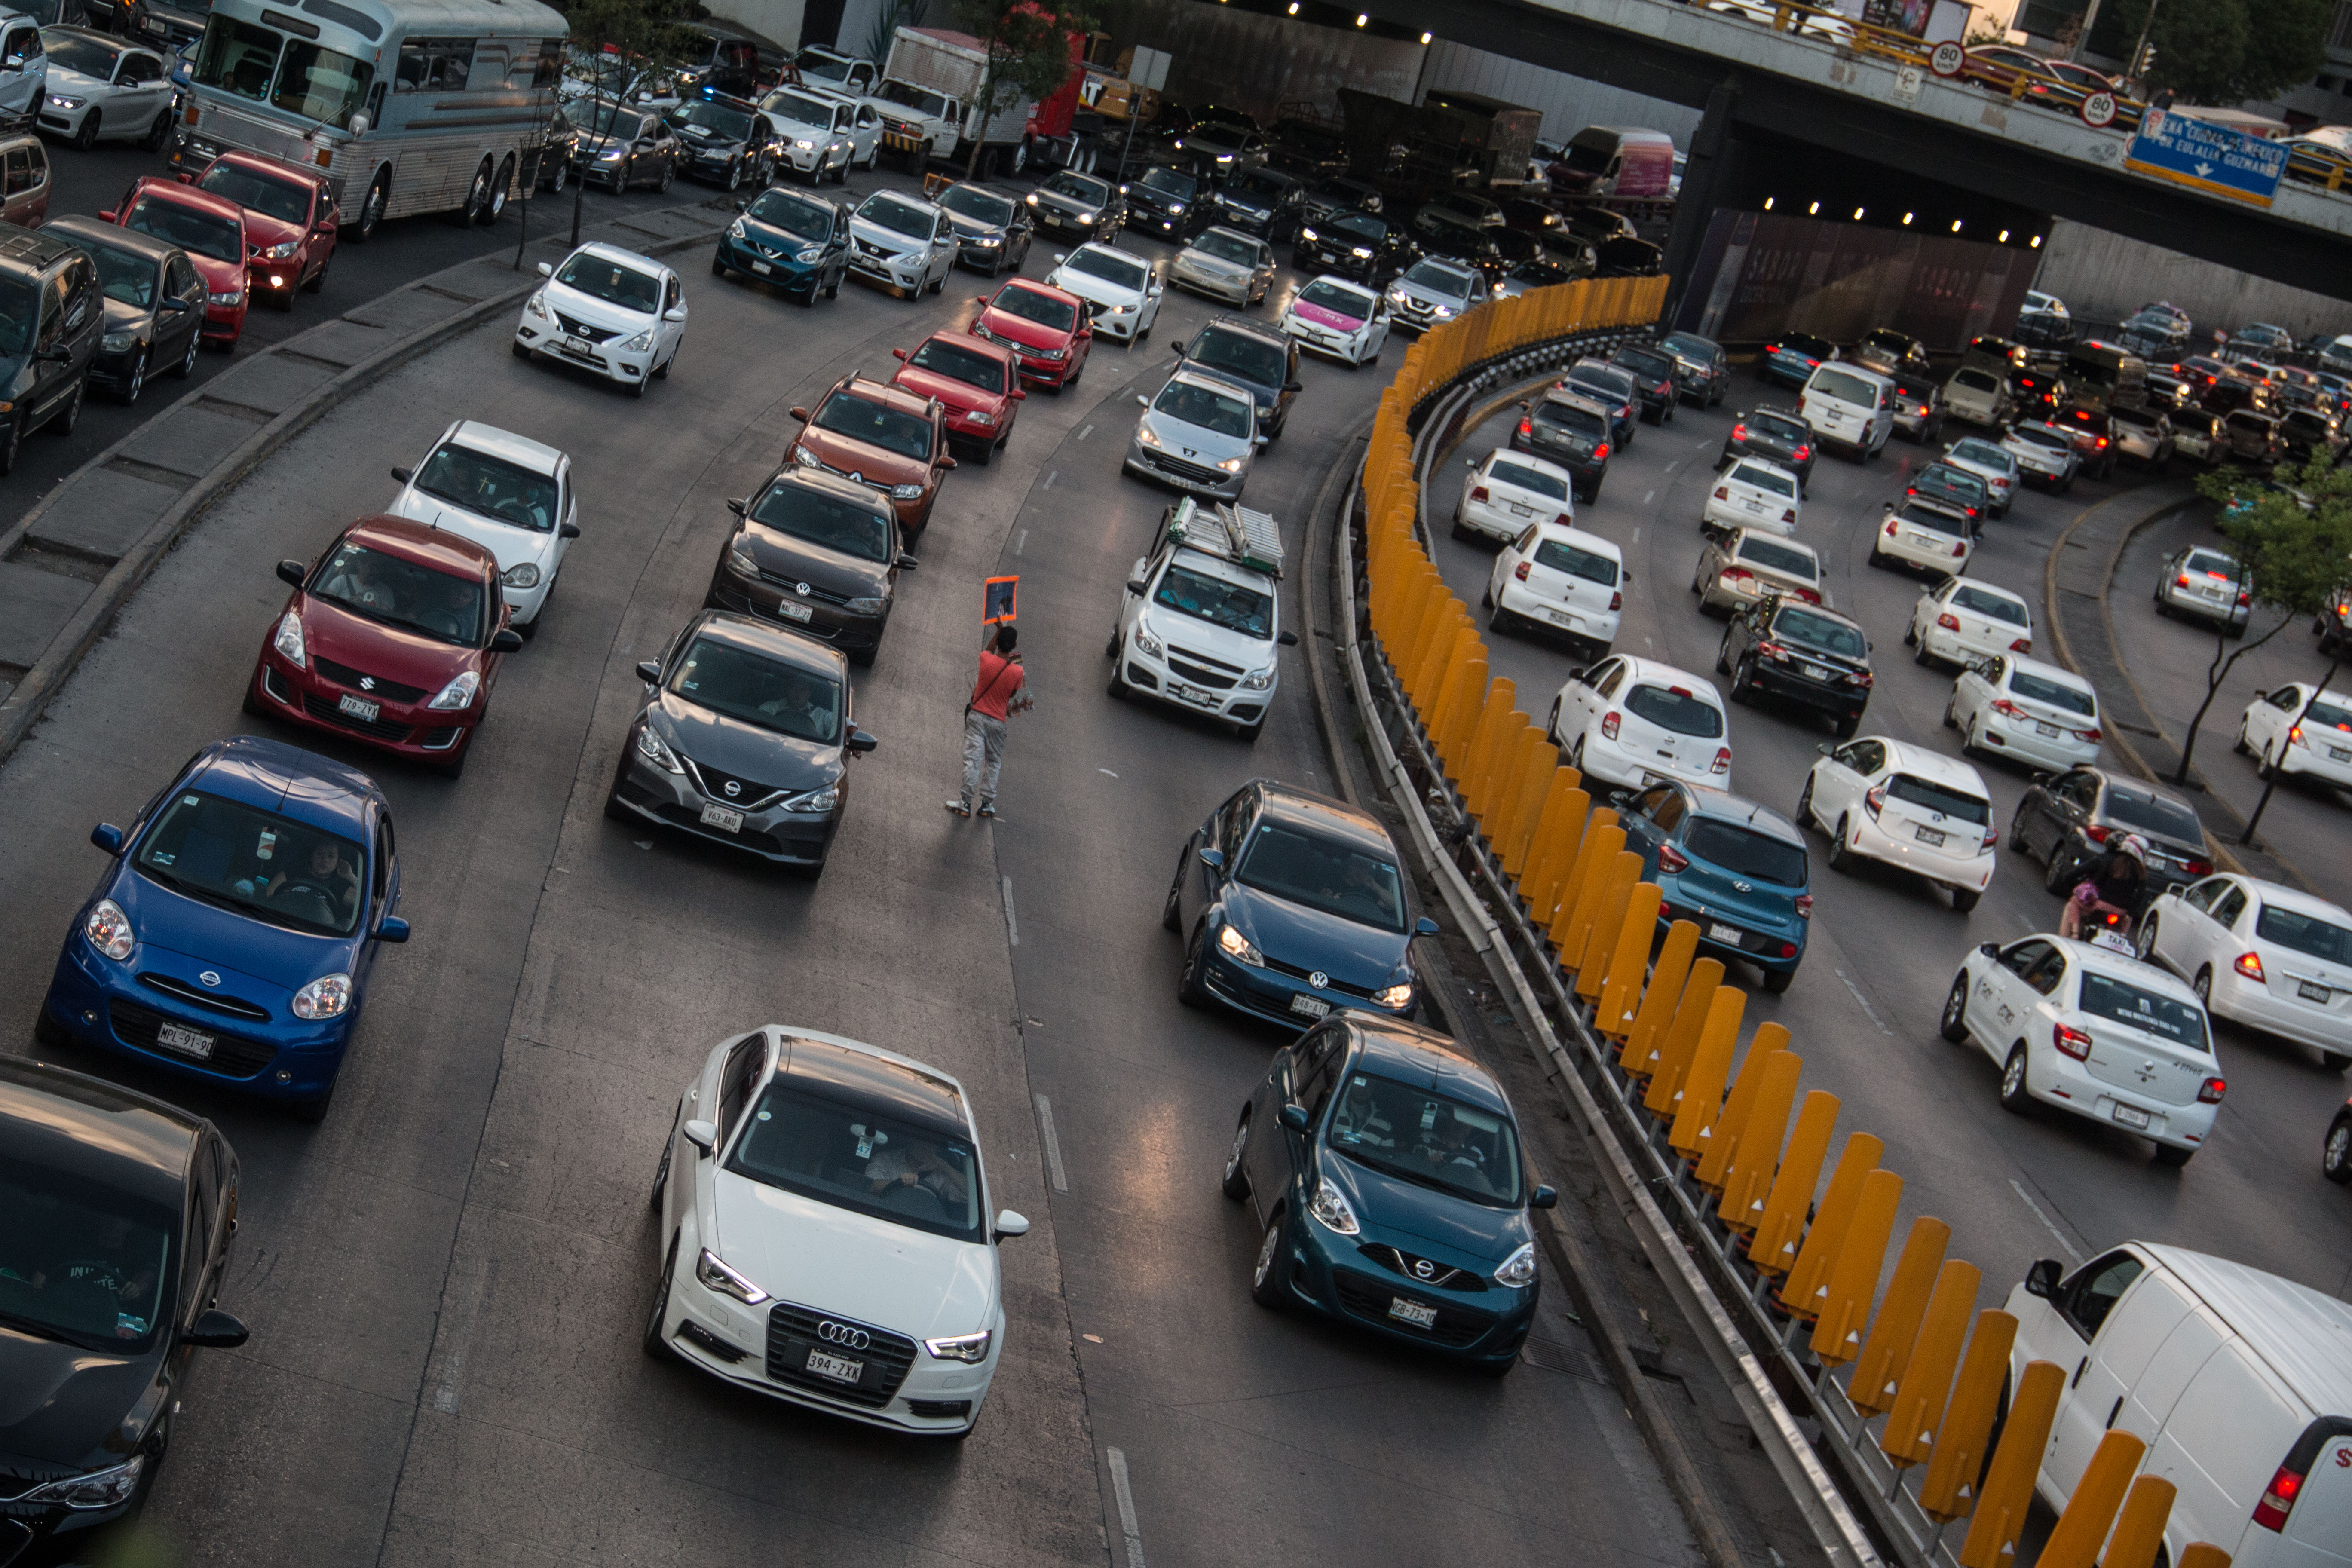 Como cada año, los automovilistas tendrán que realizar el pago de la tenencia vehicular con el fin de contribuir a la recaudación fiscal (FOTO: ANDREA MURCIA /CUARTOSCURO.COM)